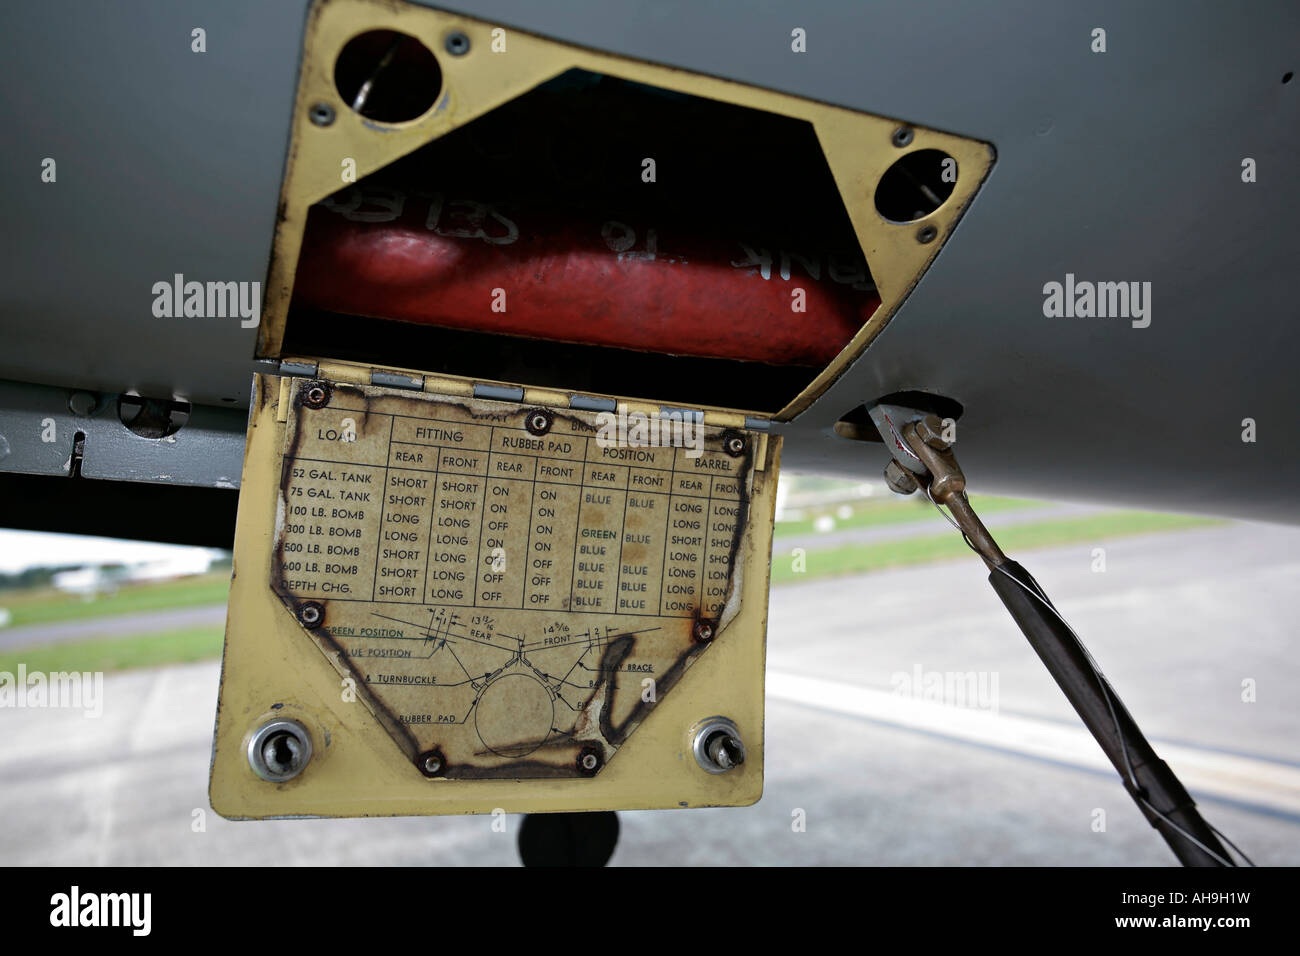 Abschnitt des Unterwagens Curtiss P40 Kittyhawk zeigt Tabelle der Einstellungen für Bomben. Stockfoto